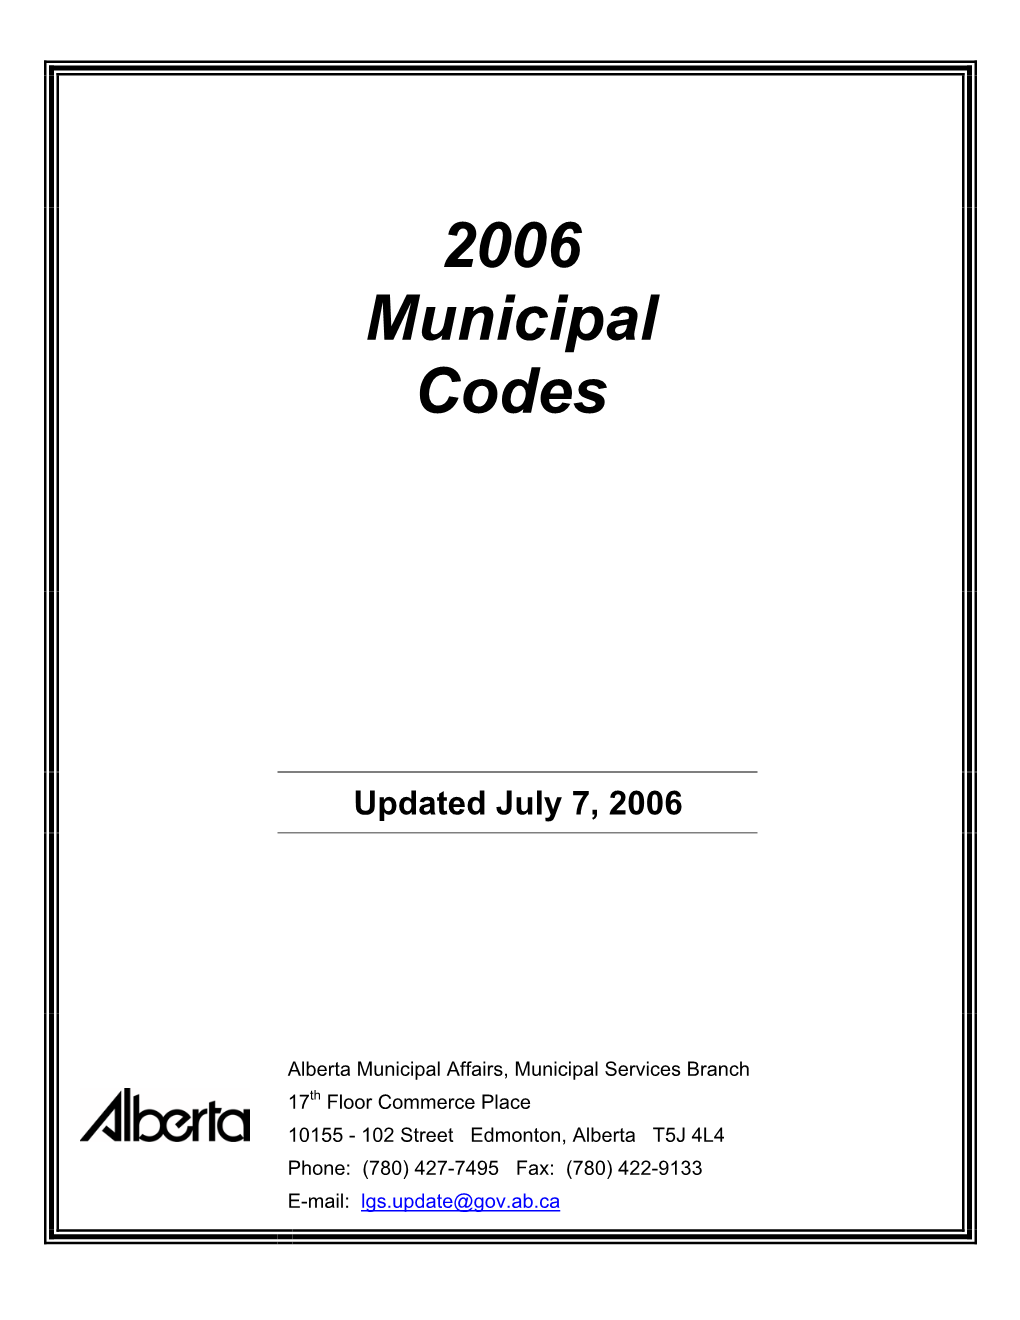 2006 Municipal Codes